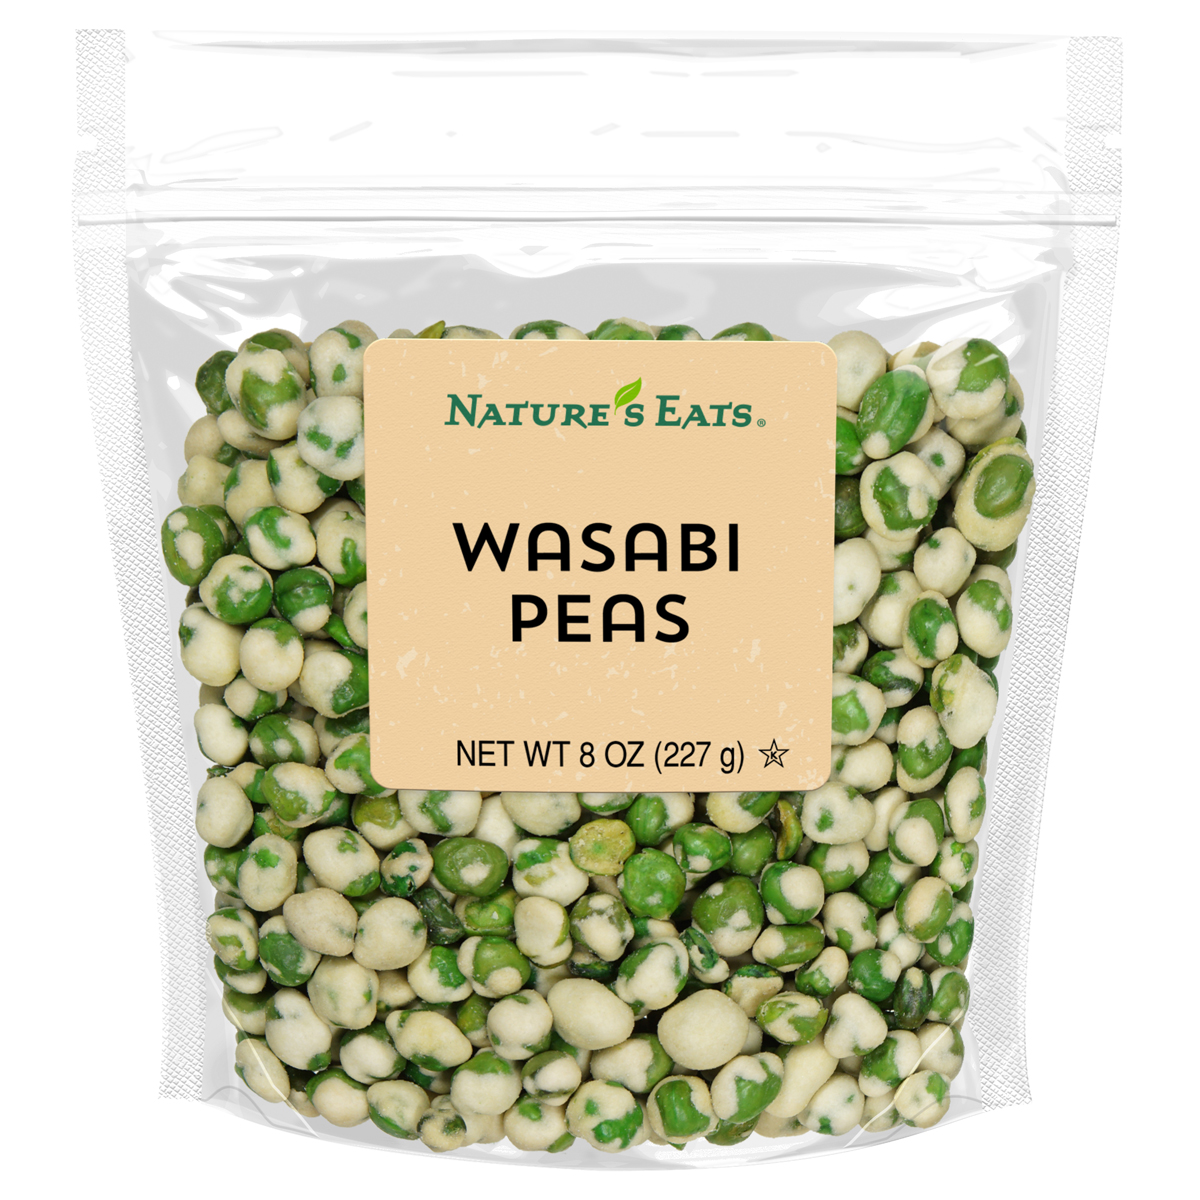 wasabi-peas-nep-8oz.jpg